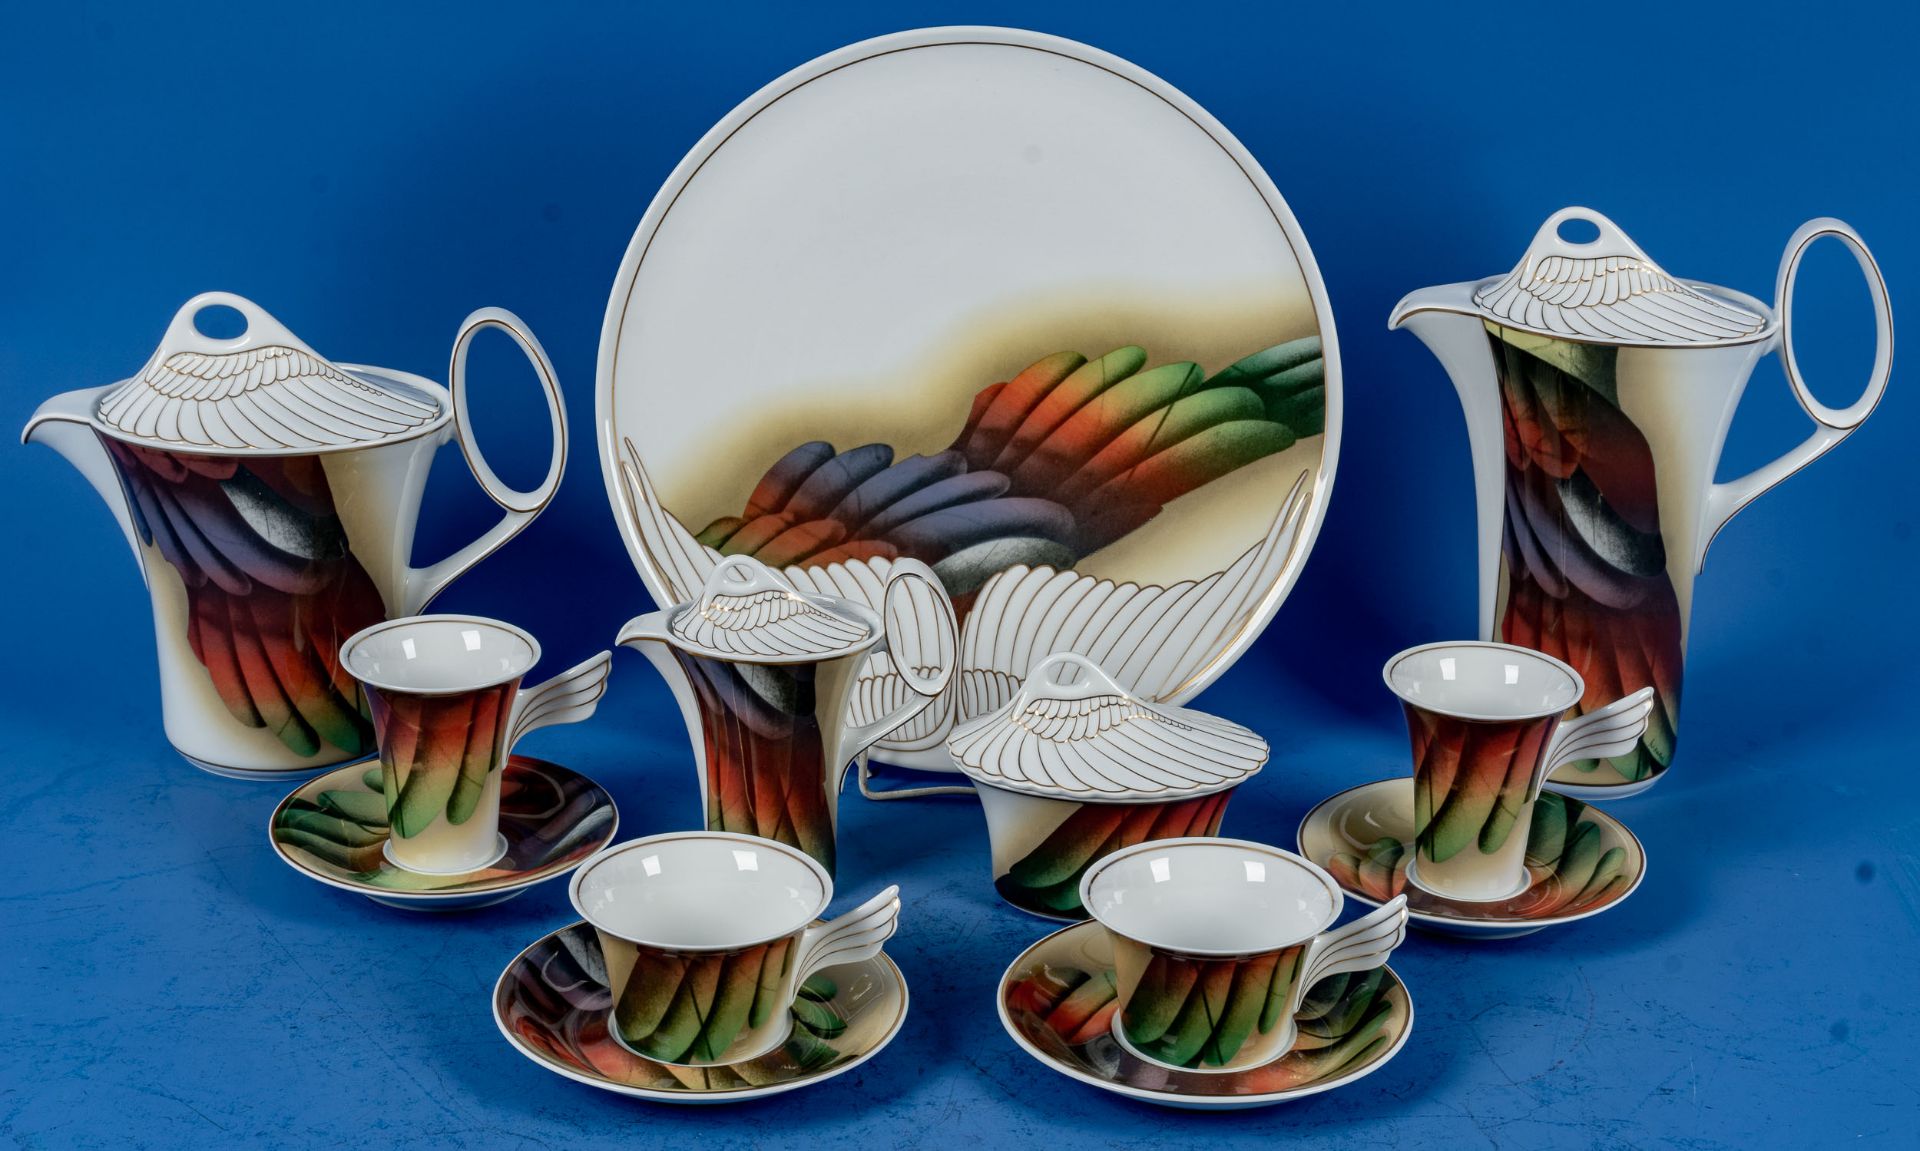 13teiliges Tee- und Kaffee Set für 2 Personen. Entwurf von Paul Wunderlich (1927 - 2010) für Rosent